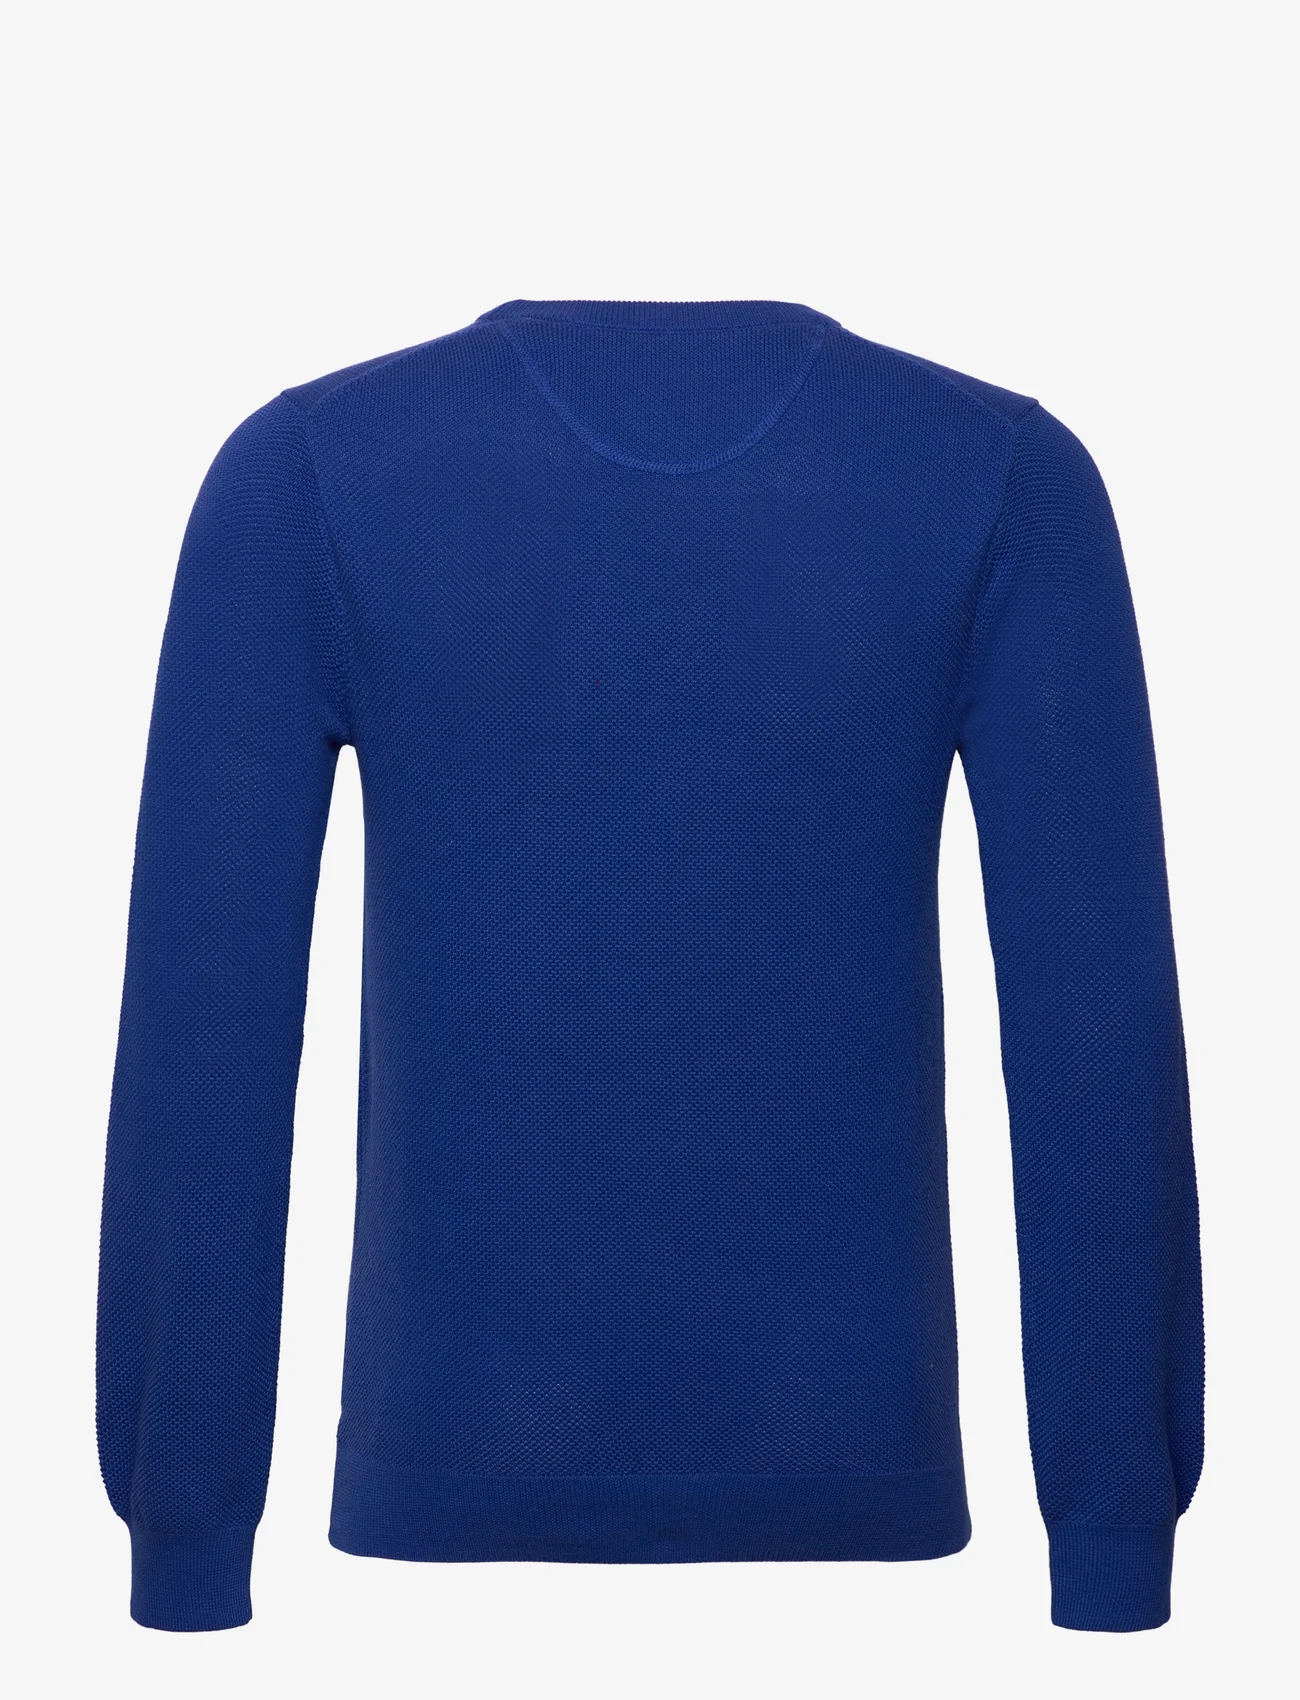 GANT - COTTON PIQUE C-NECK - knitted round necks - college blue - 1